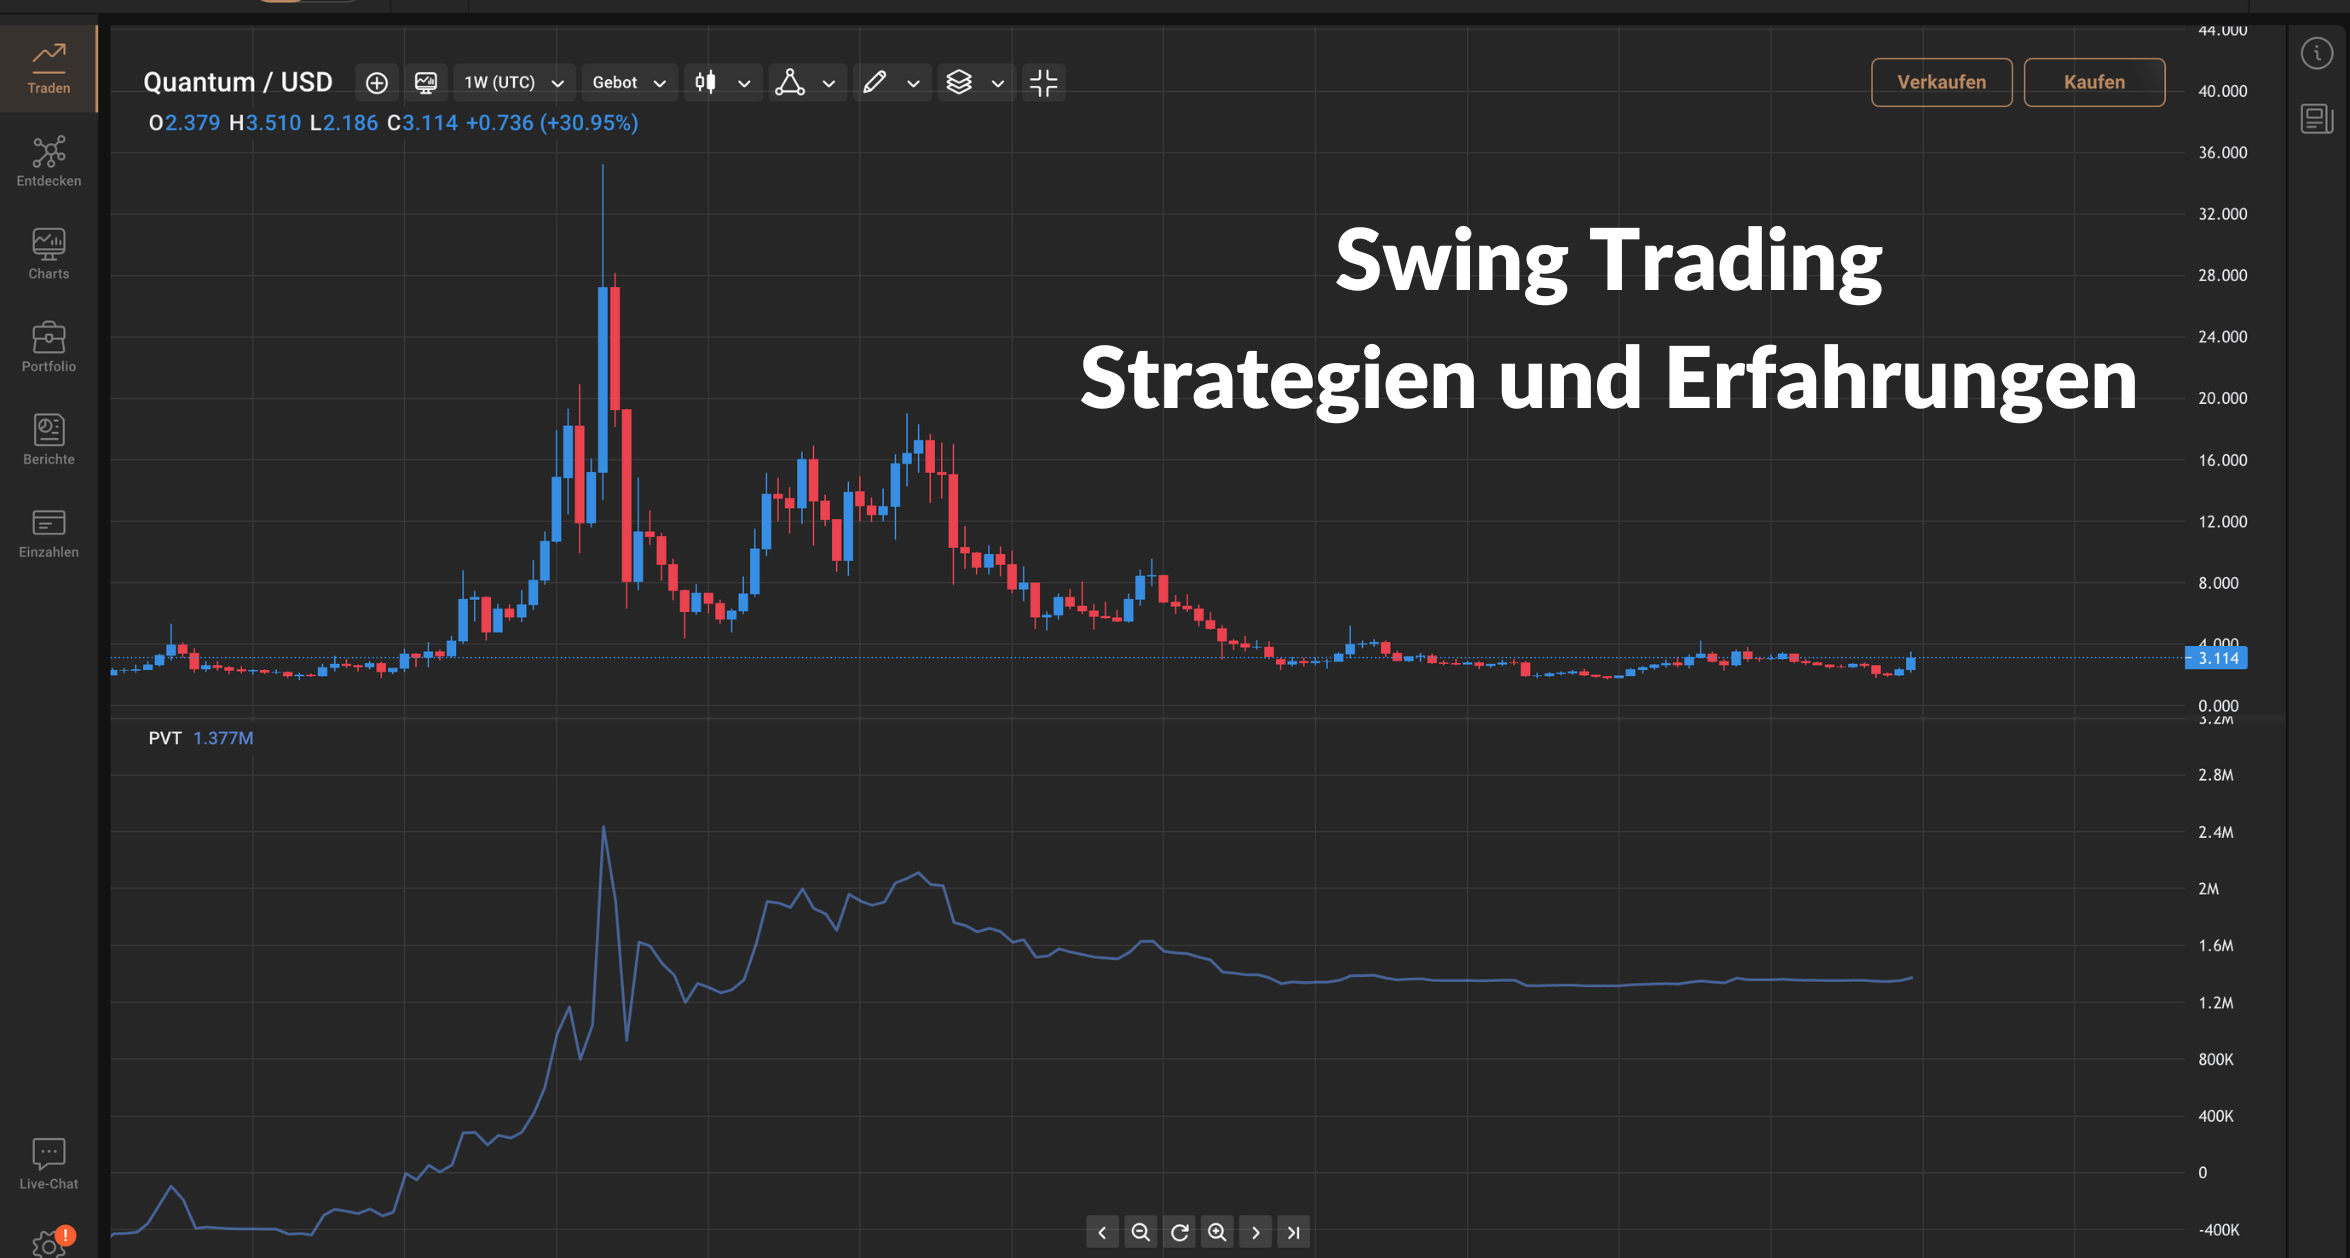 Swing Trading Strategien und Erfahrungen